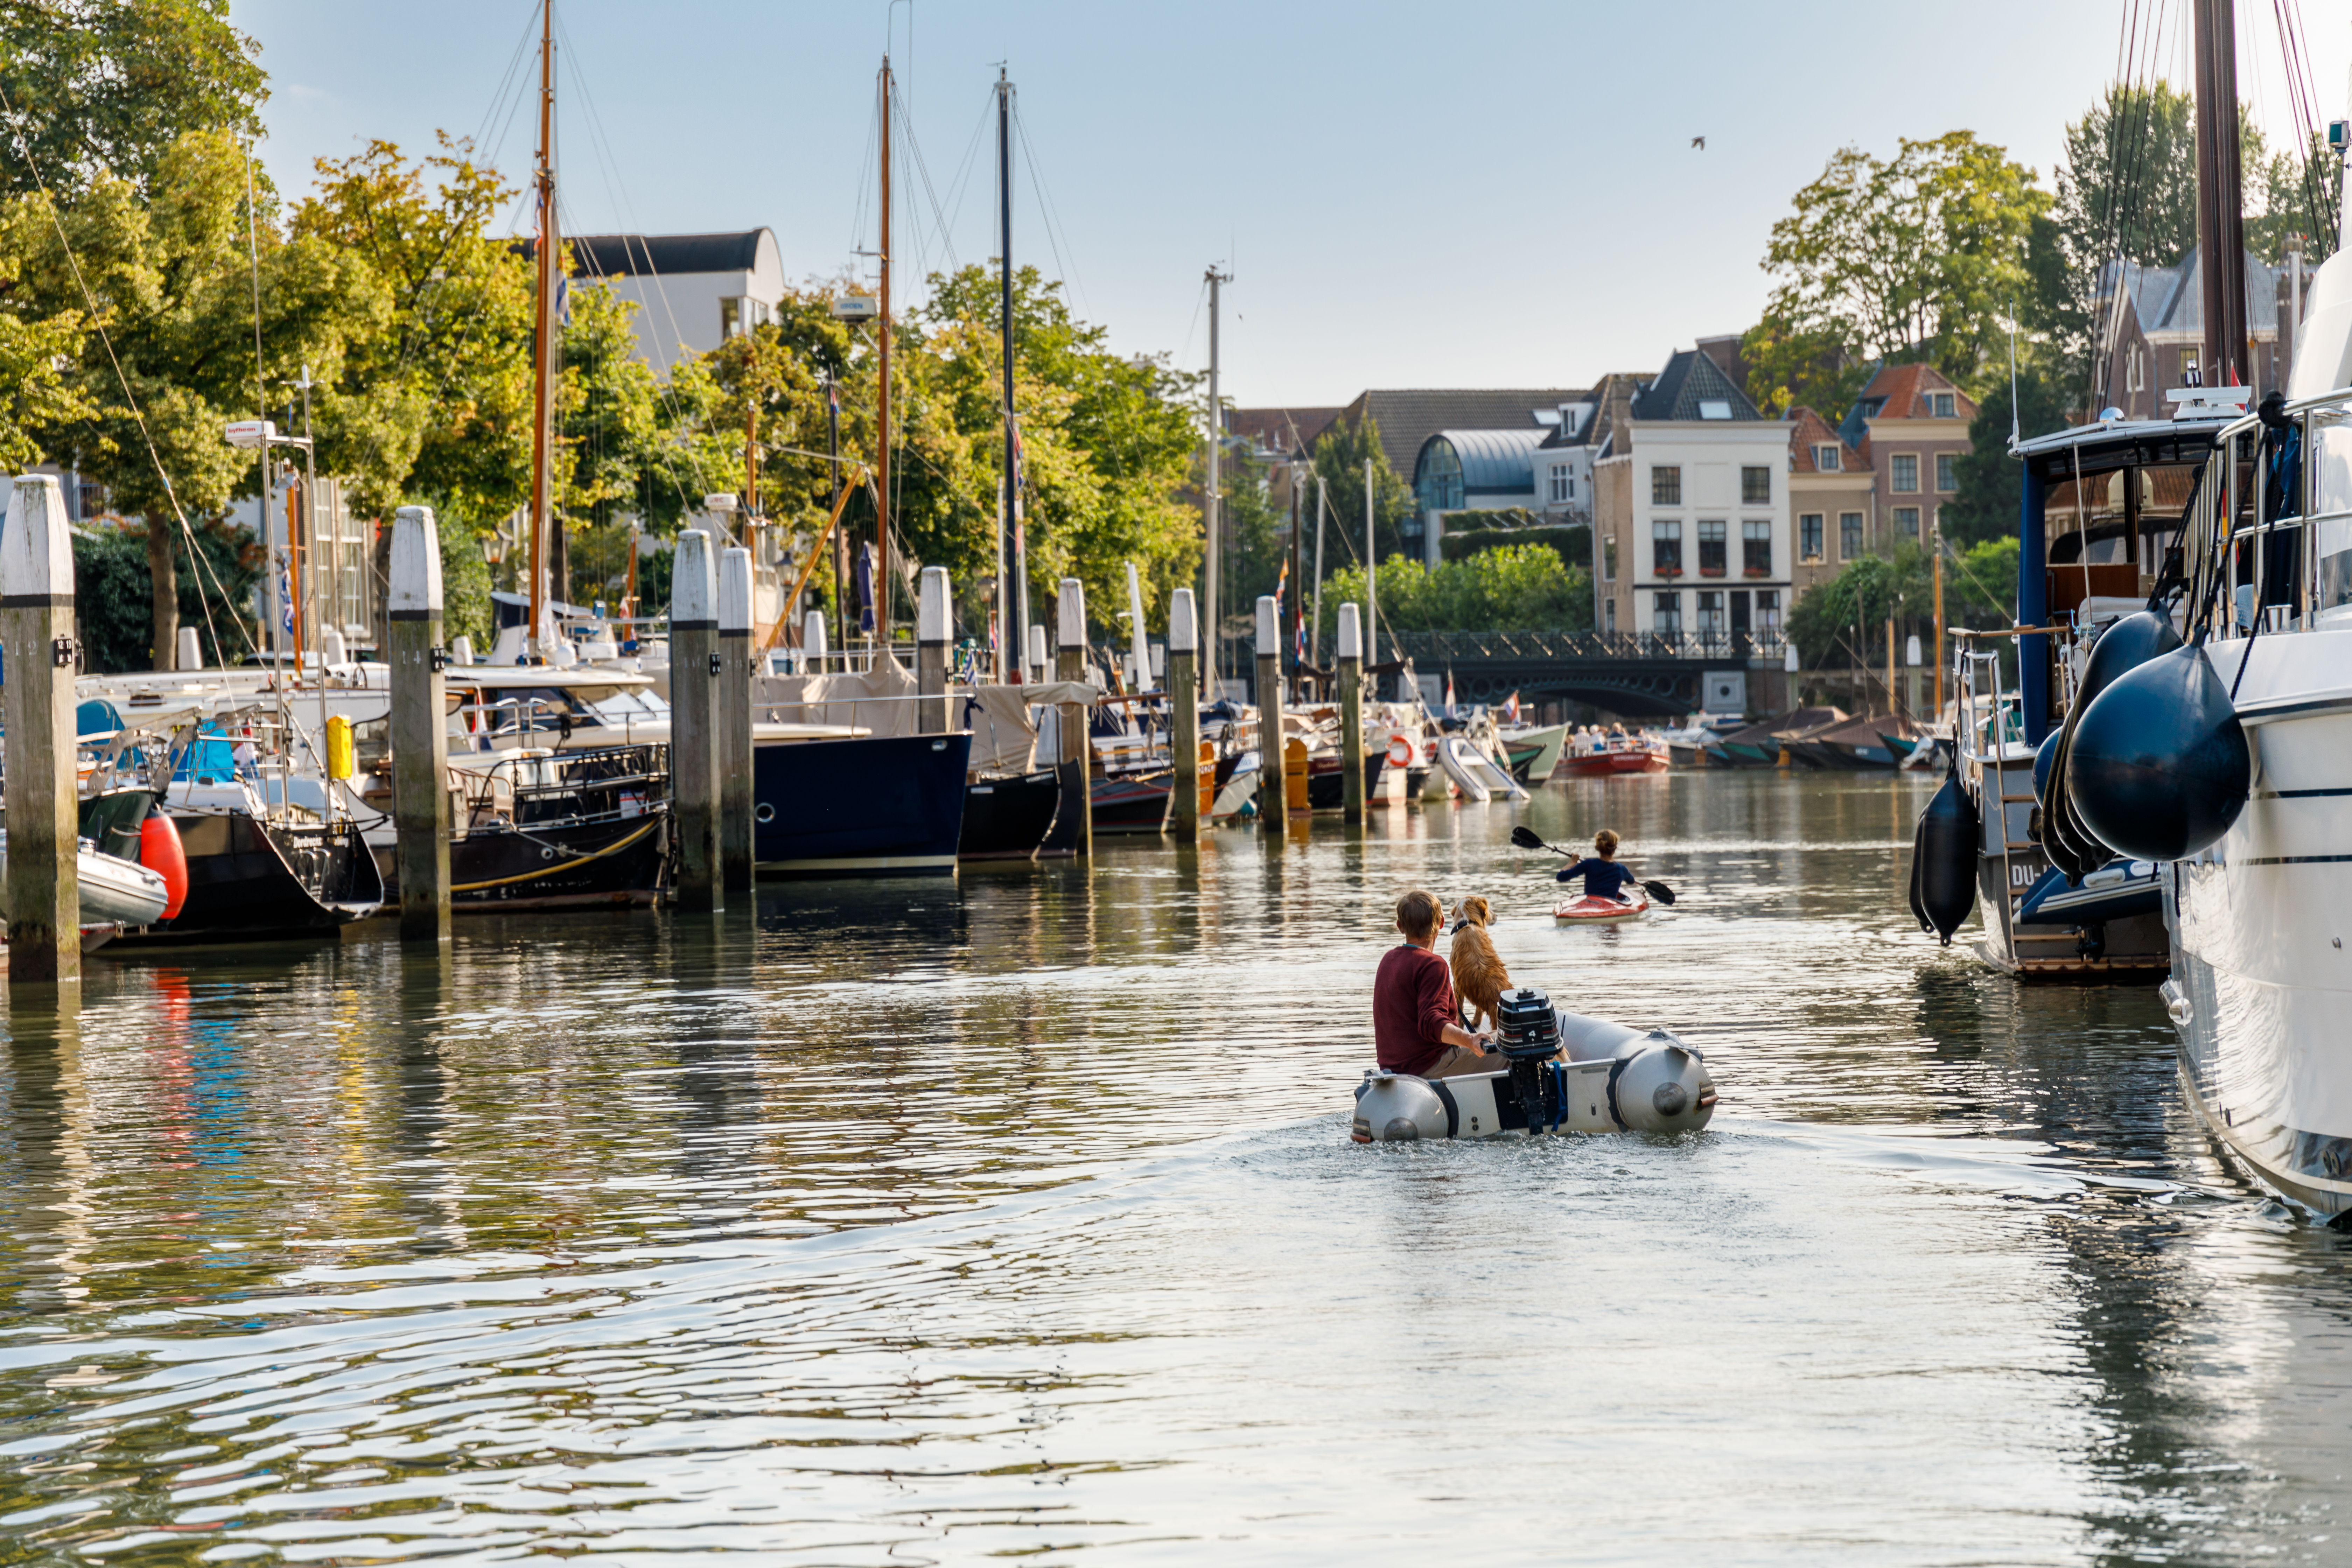 Wijnhaven Bootverhuur boot Dordrecht